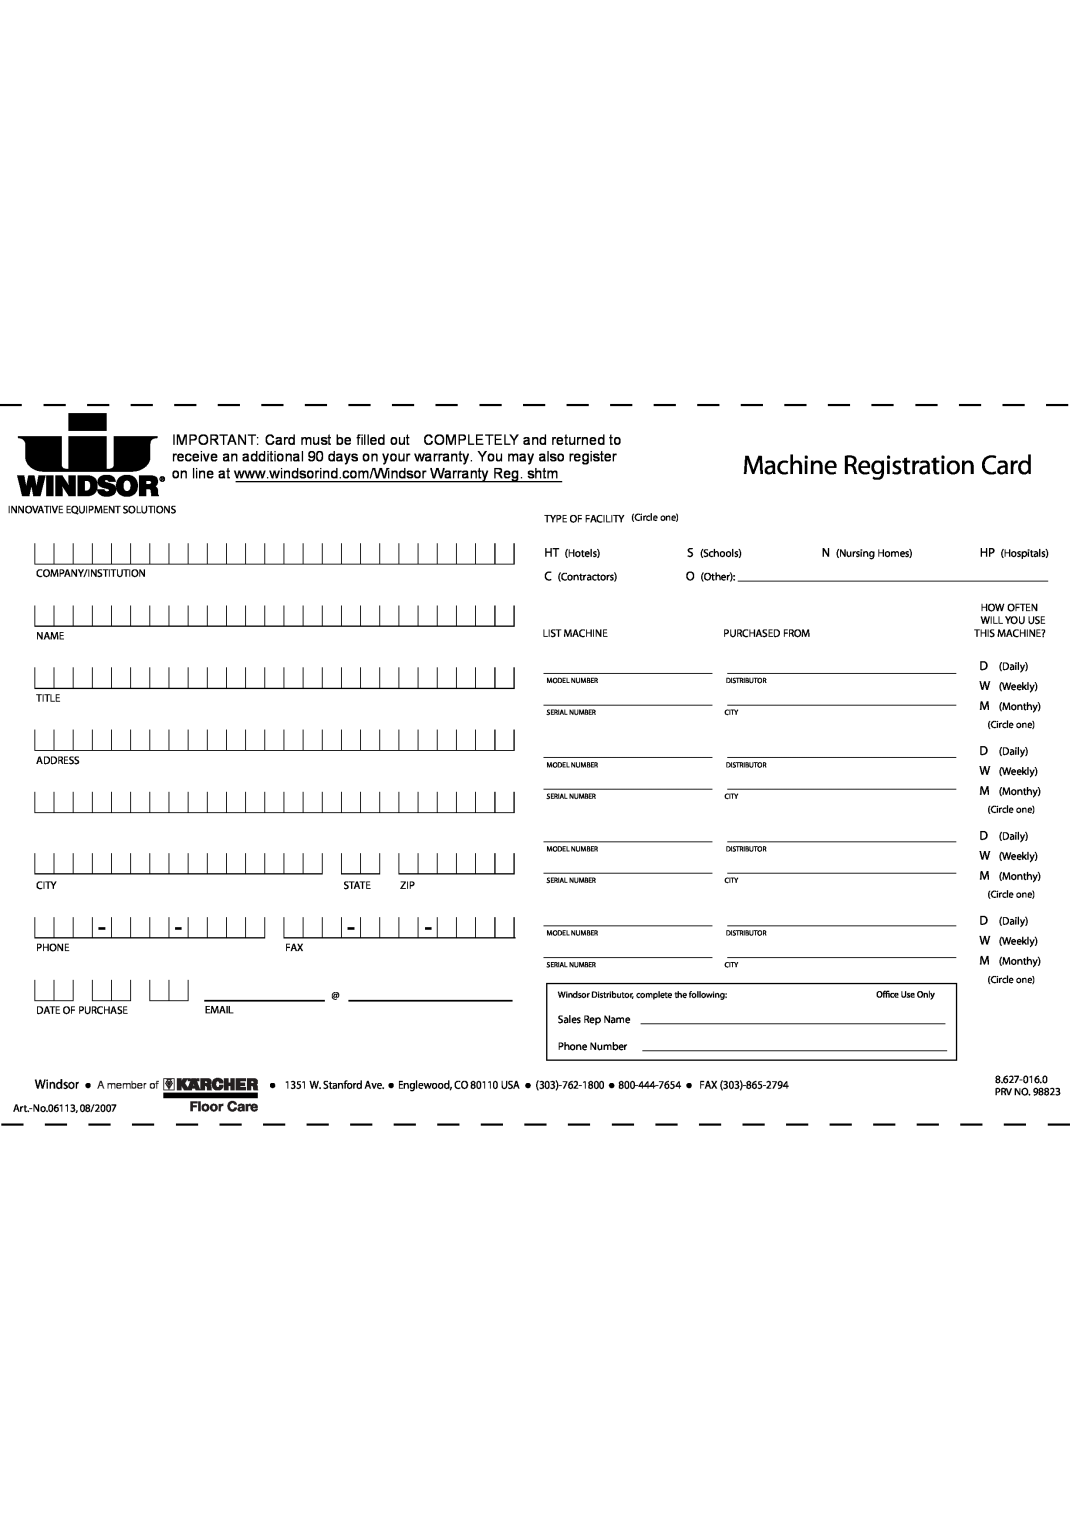 Windsor 10120270, SRXP15 manual Machine Registration Card, Windsor, A member of 